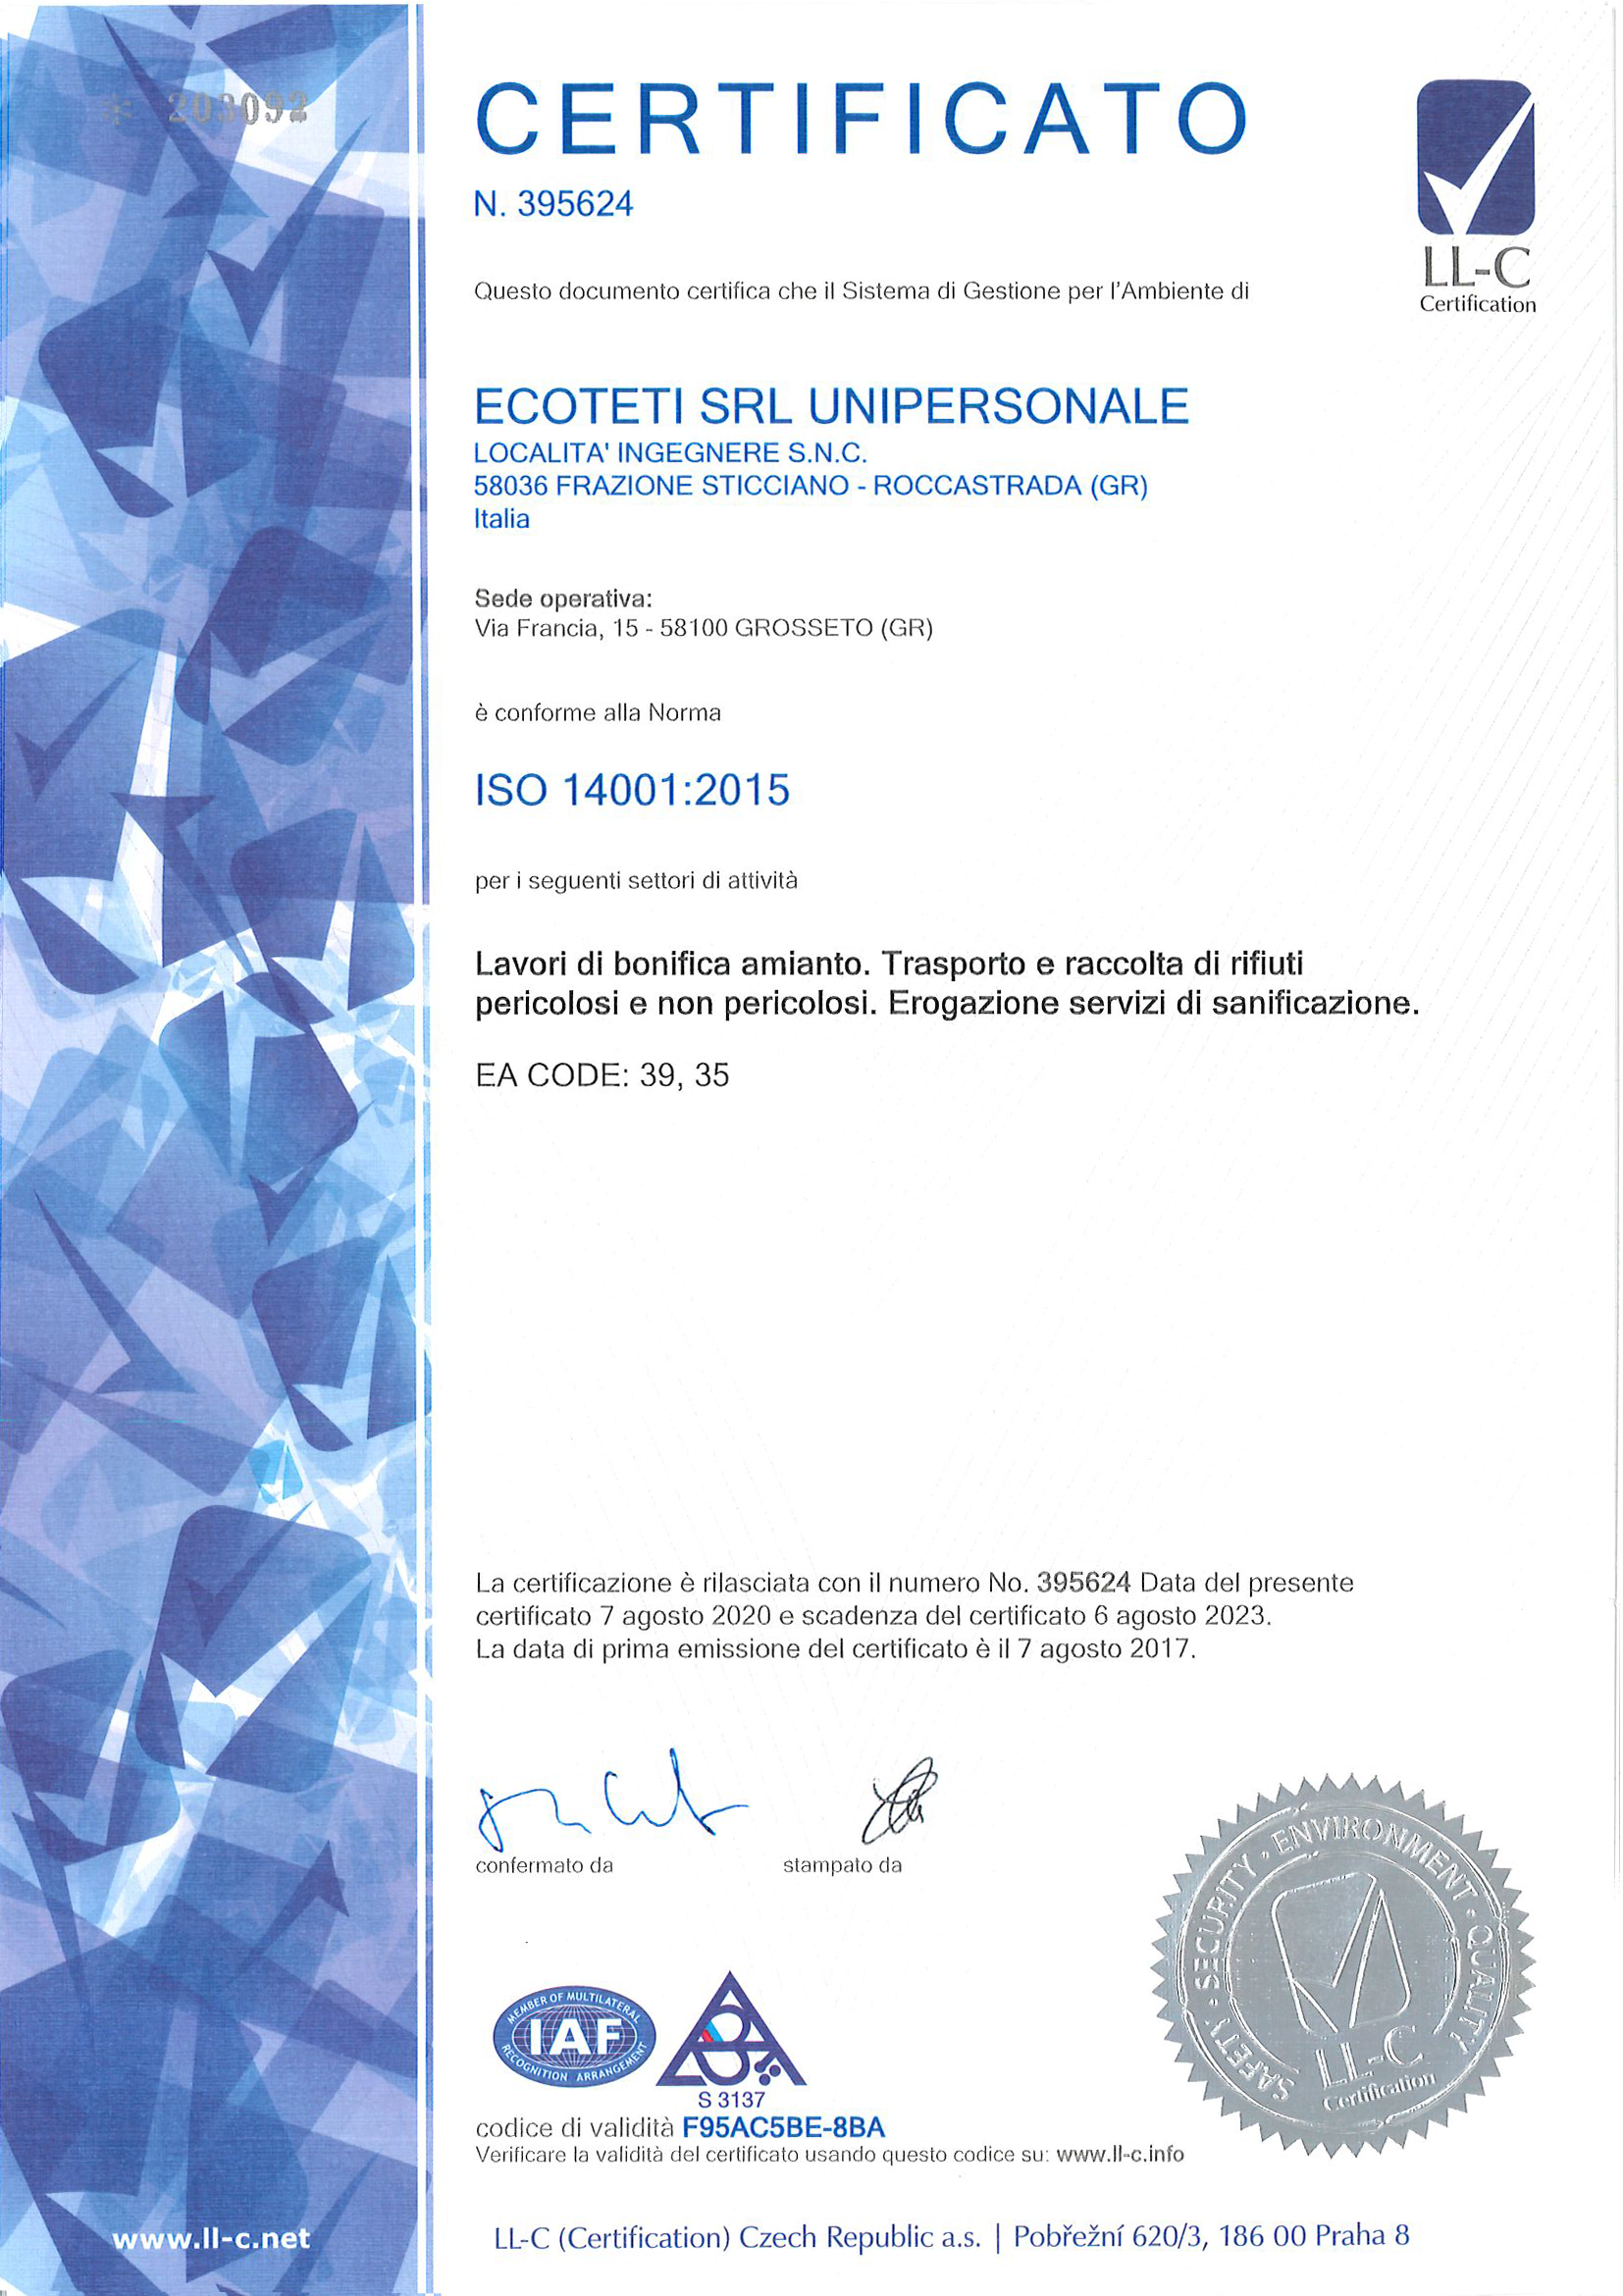 Azienda certificata LL-C Certification ISO 14001 Sistema di gestione per l’ambiente su normative internazionali - Ecoteti srl